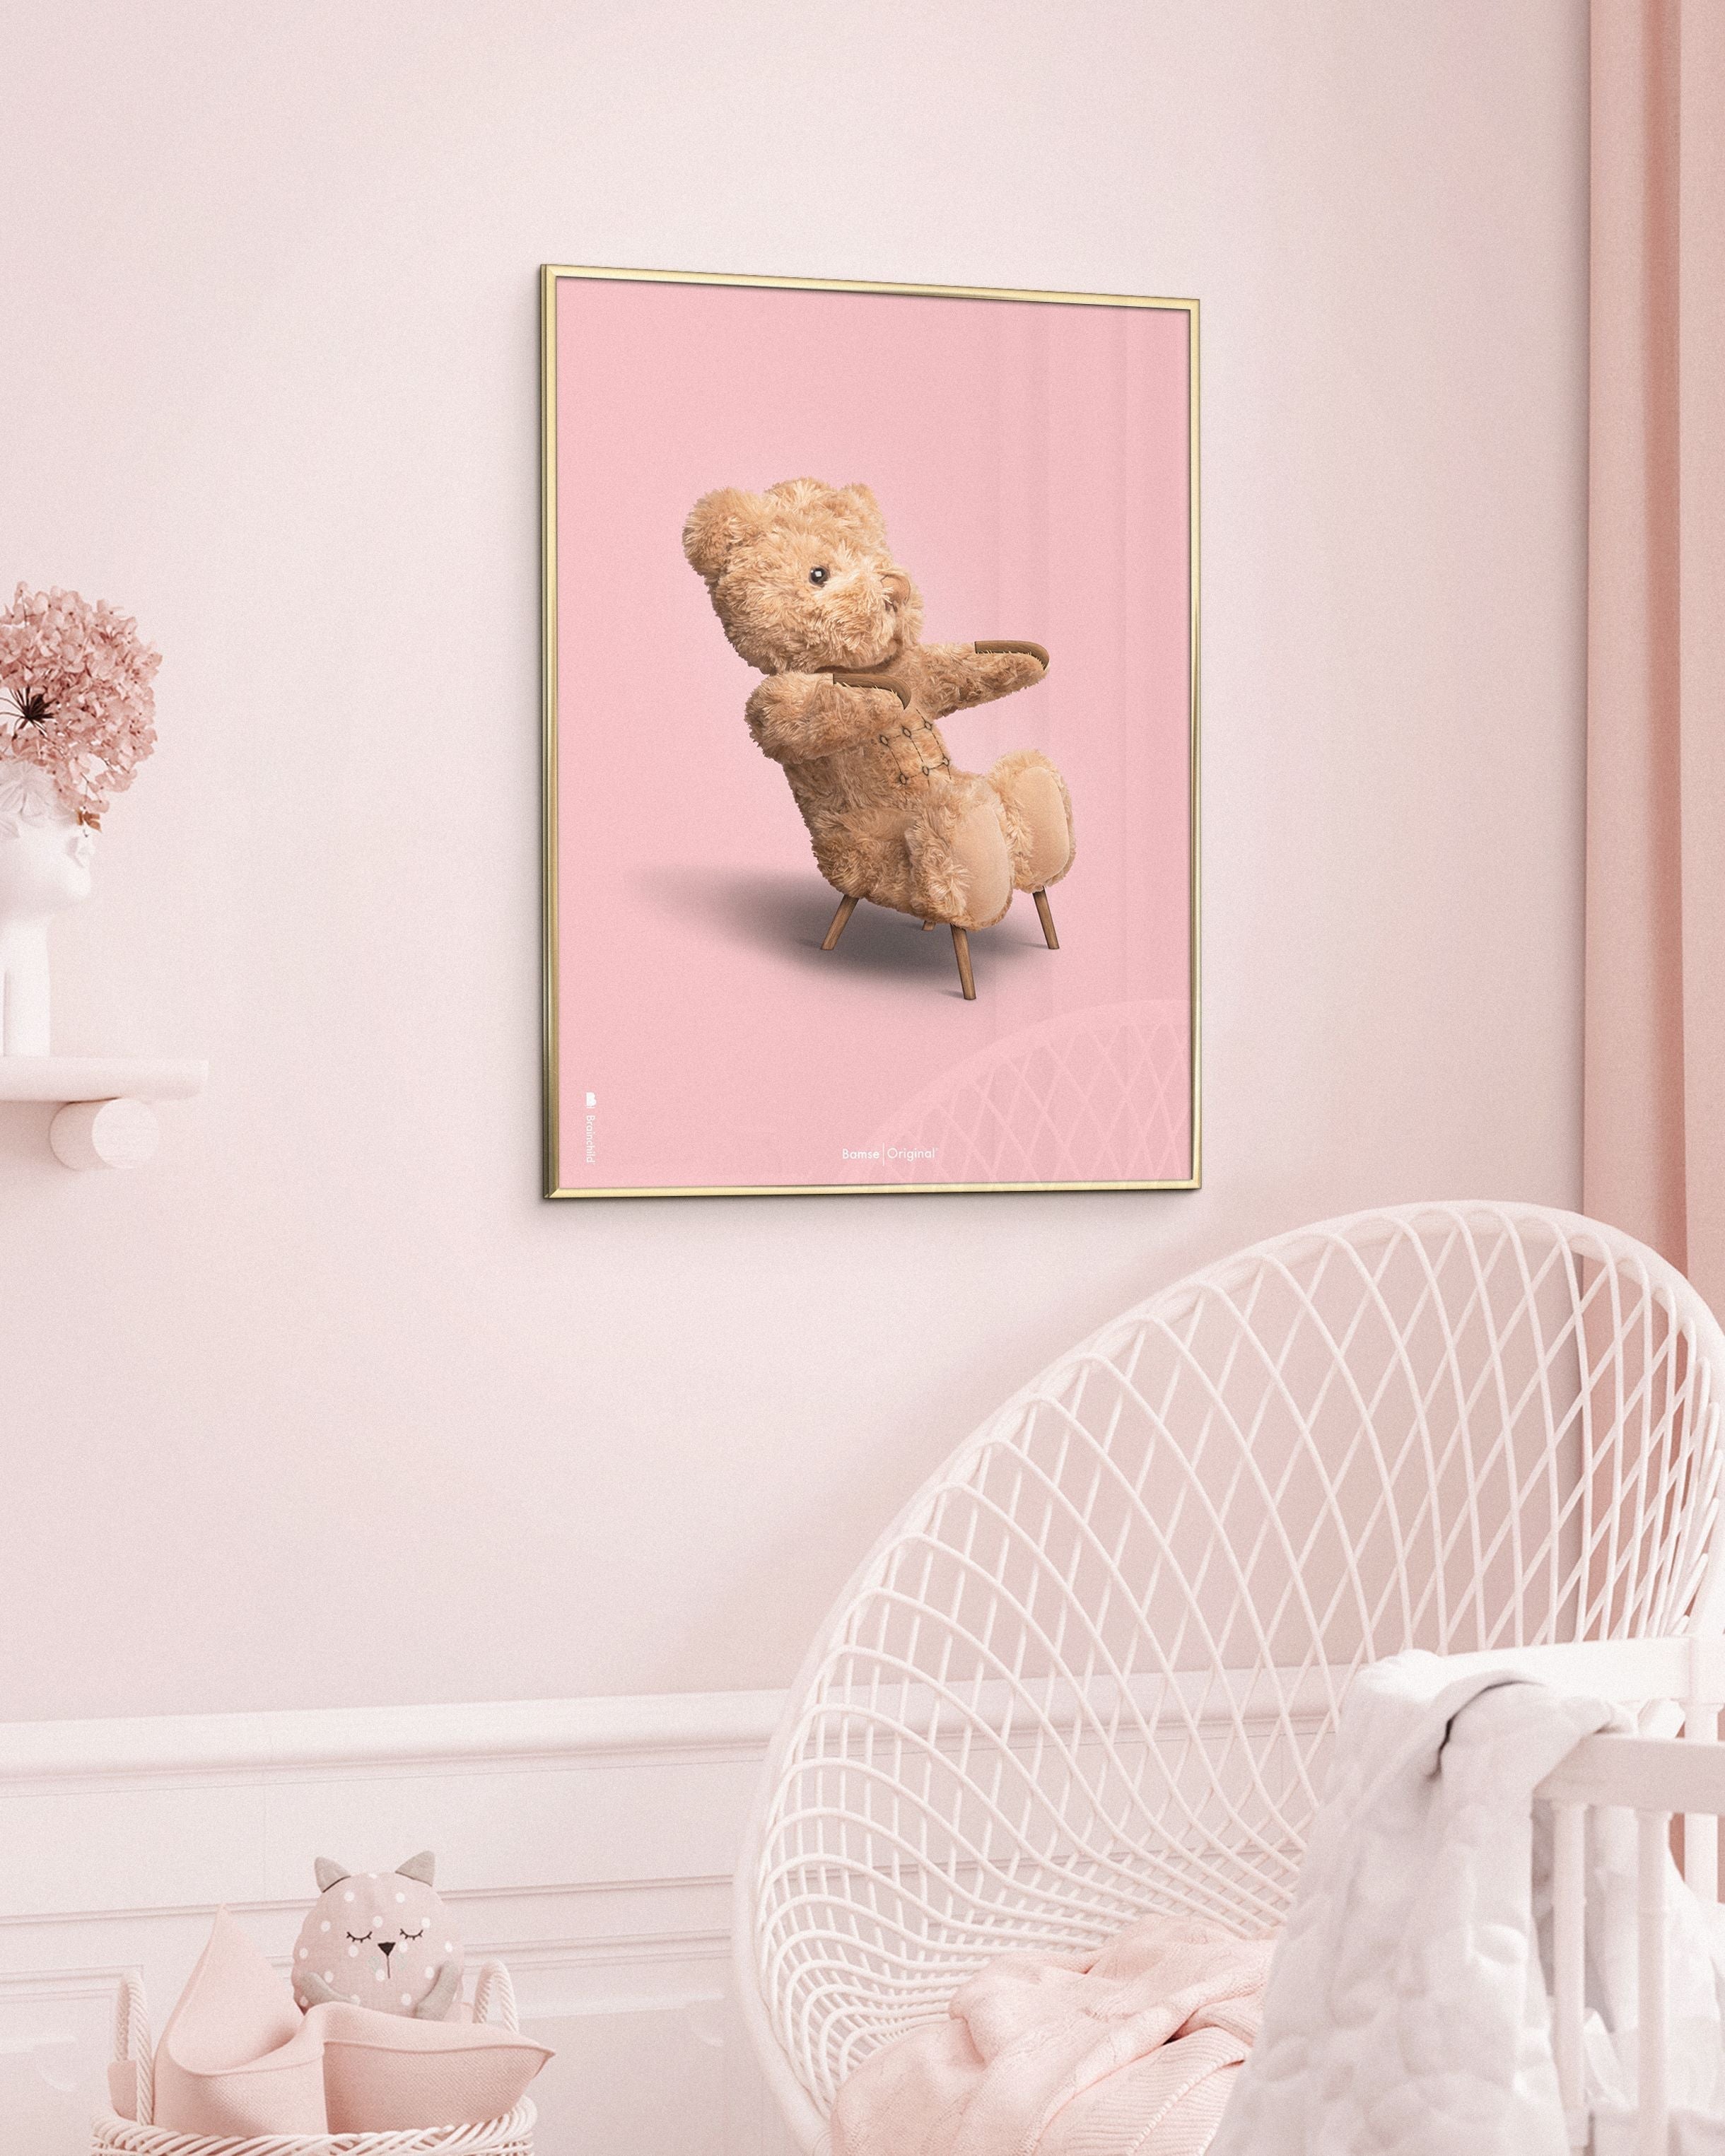 Brainchild Teddy Bear Classic plakát z plakátu vyrobený z tmavého dřeva RAM 70x100 cm, růžové pozadí